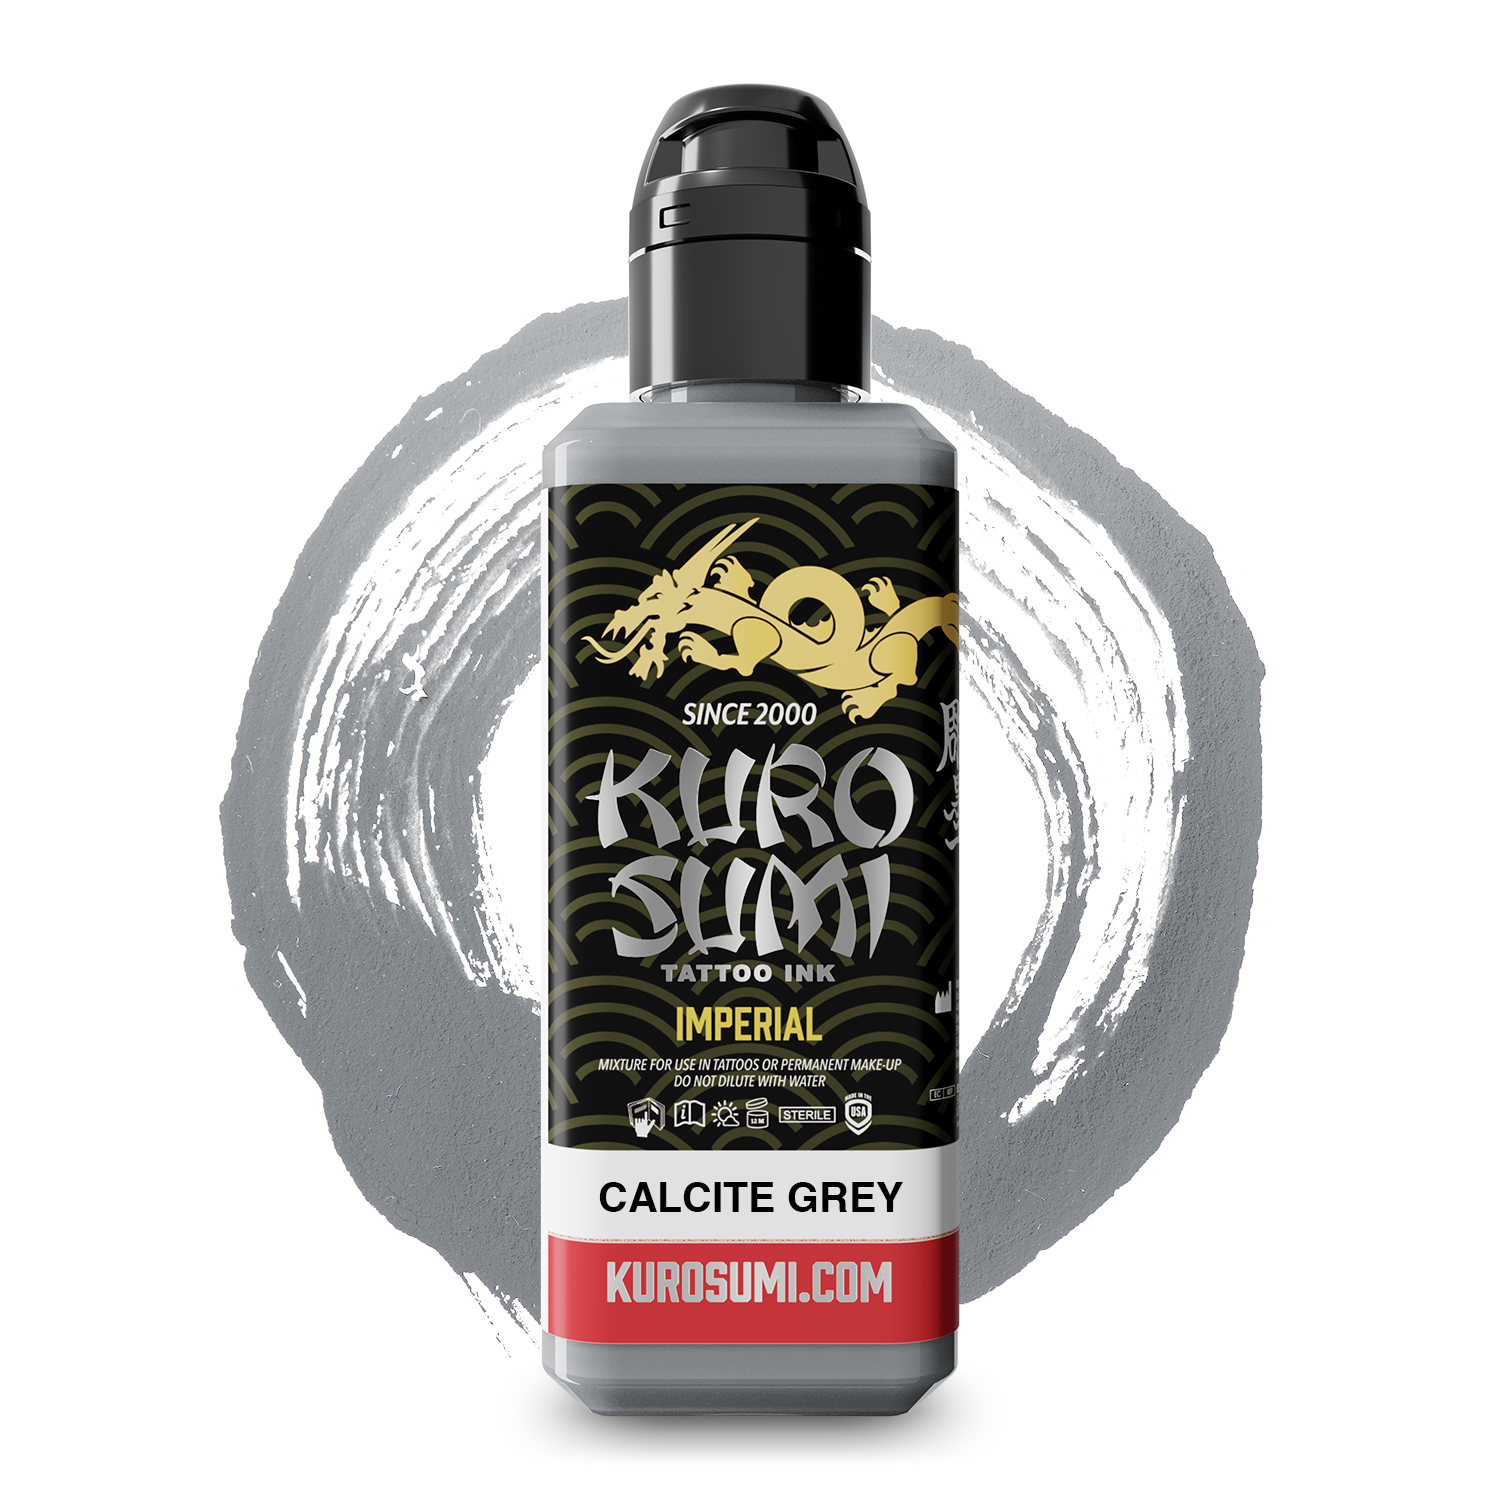 Kuro Sumi - Imperial - Calcite Grey - 88 ml